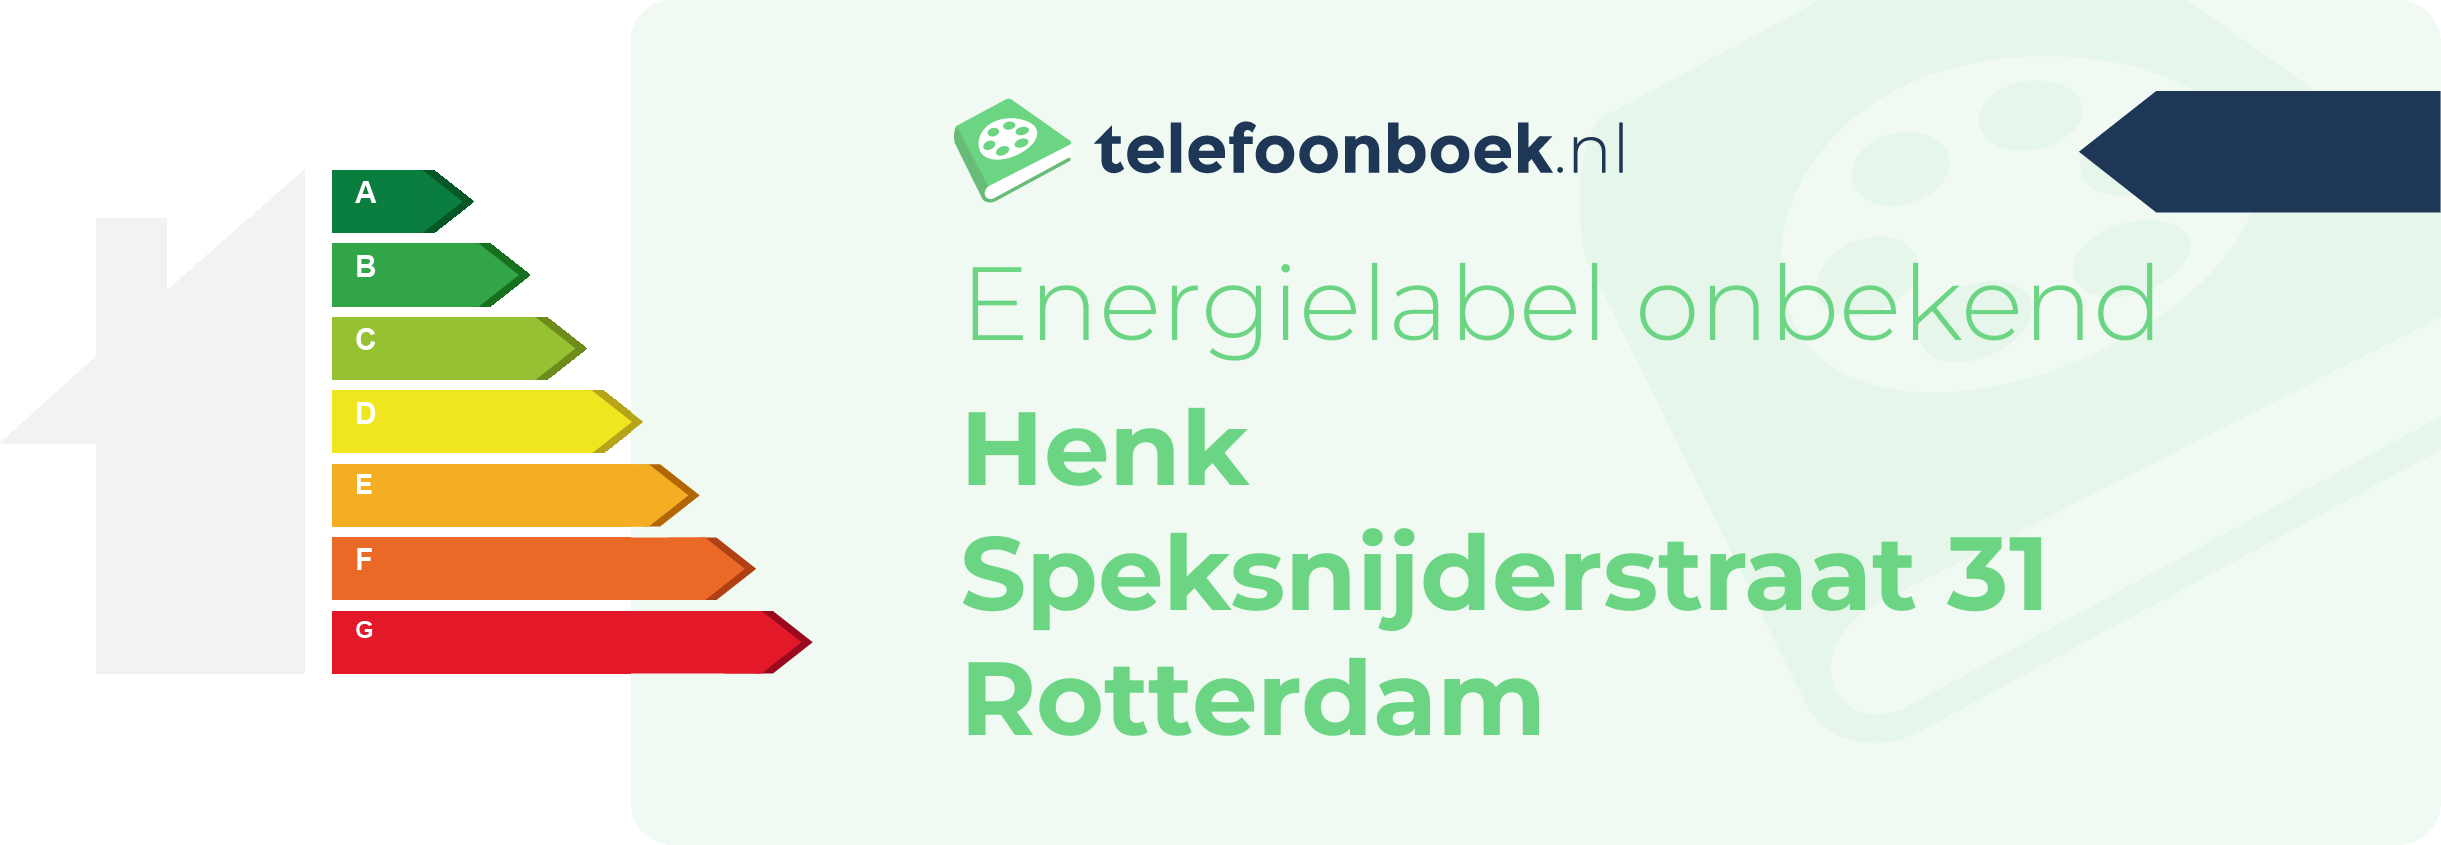 Energielabel Henk Speksnijderstraat 31 Rotterdam